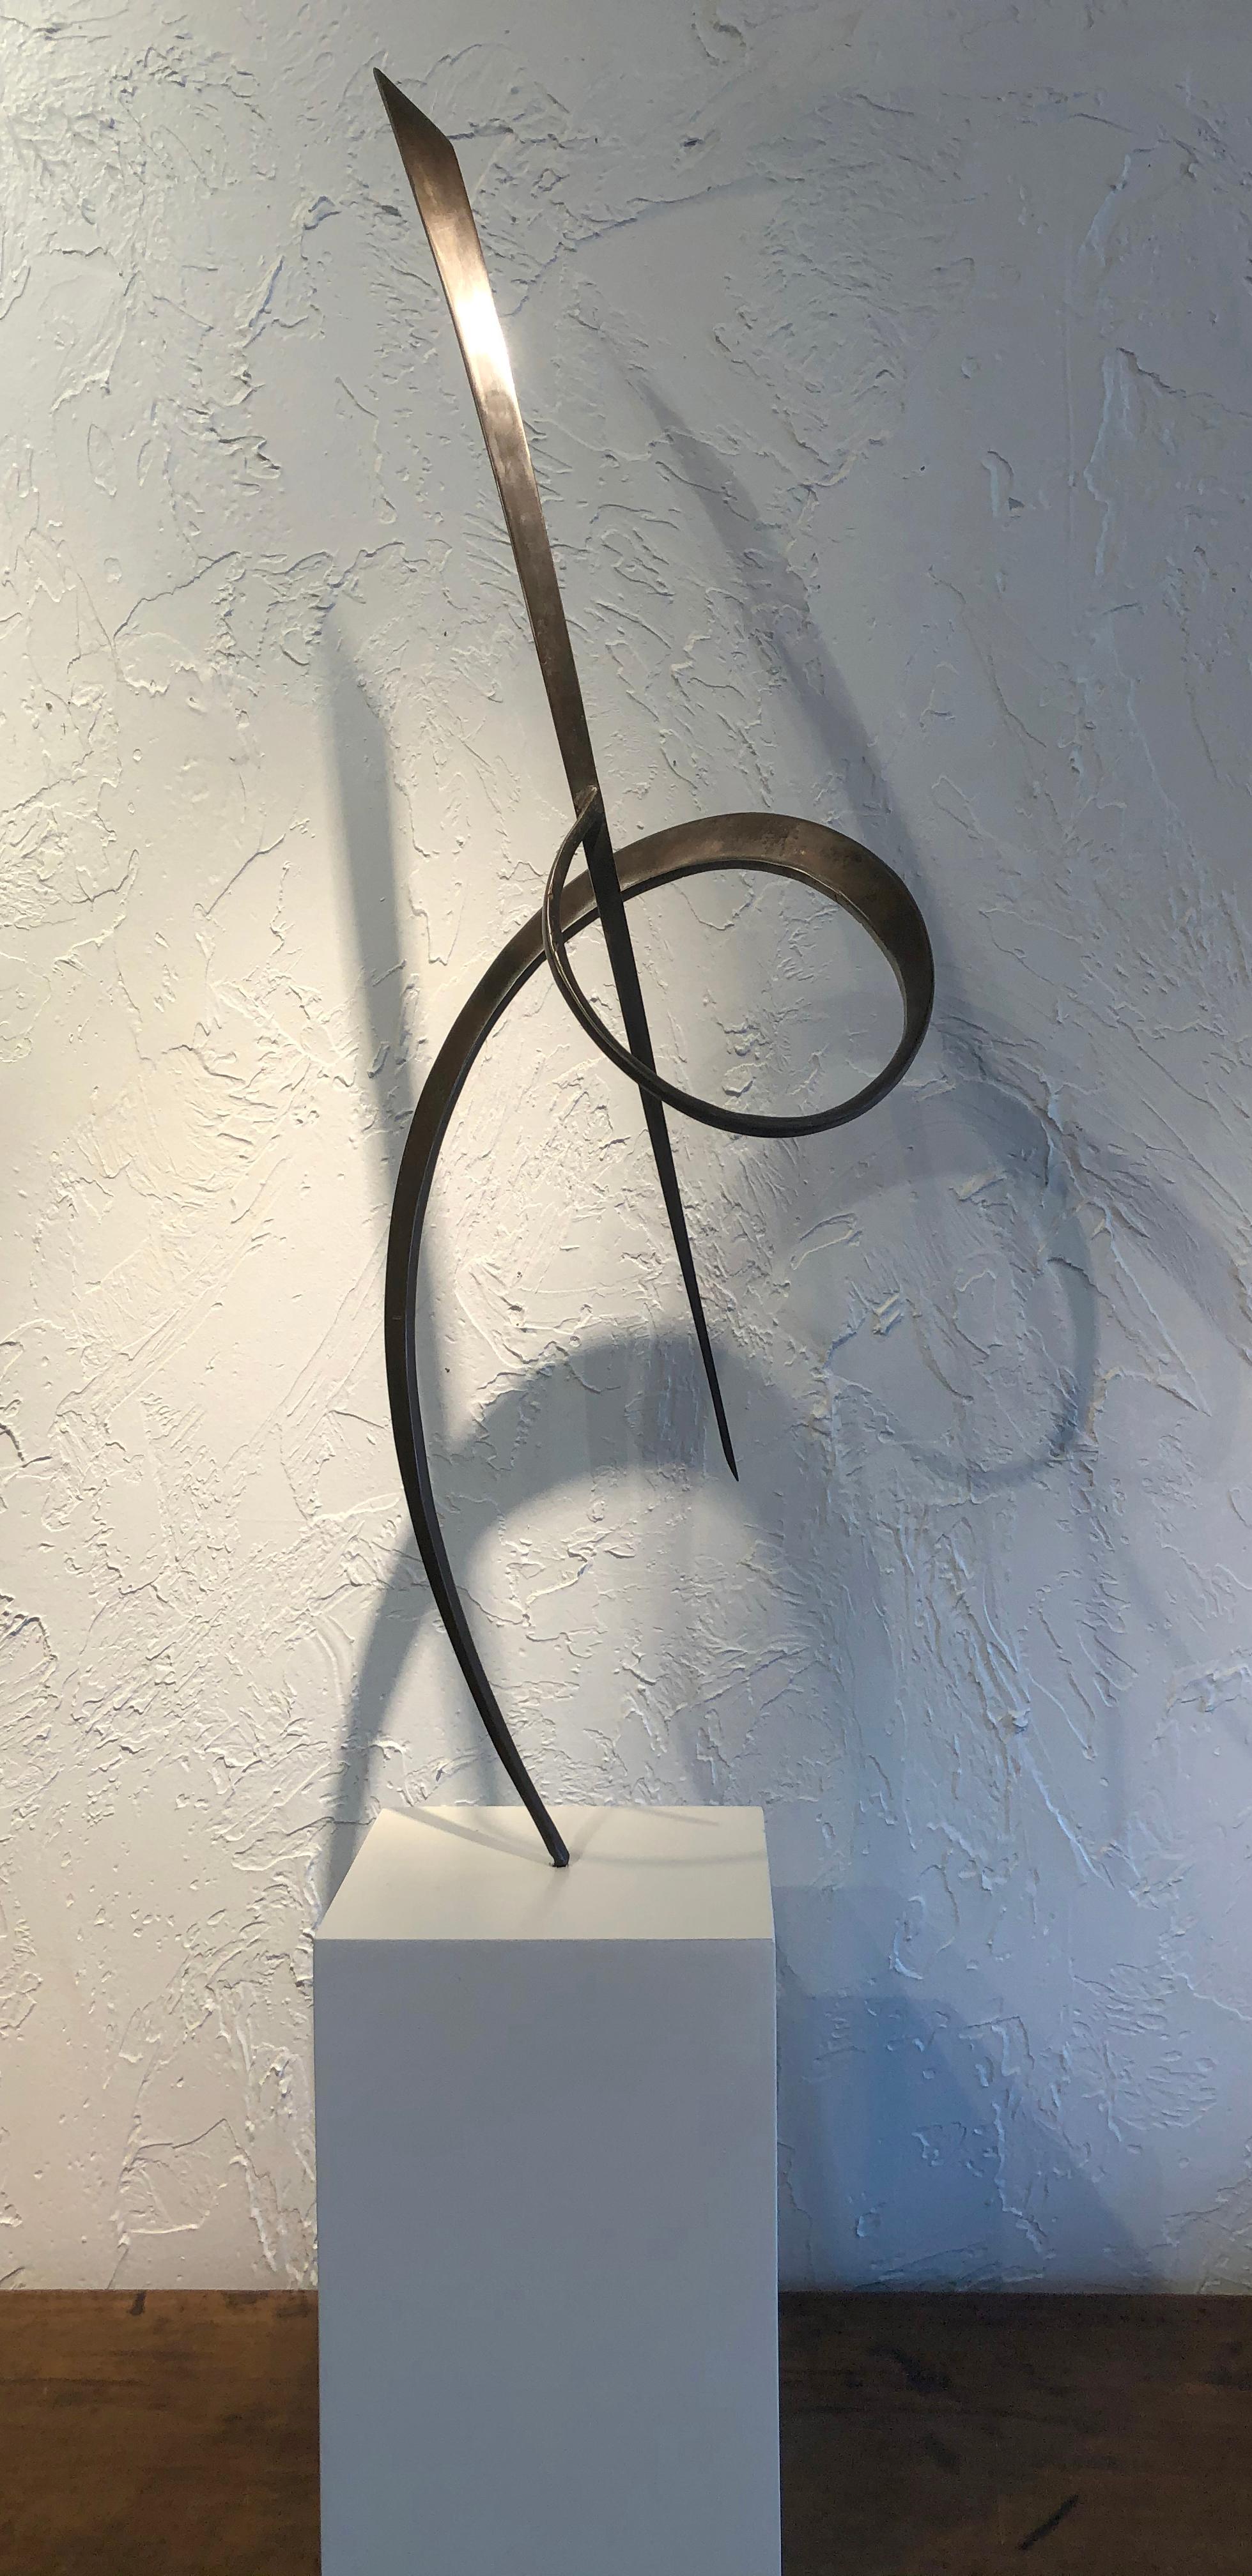 Dans cette sculpture de Marko Kratohvil, les courbes gracieuses de deux segments d'acier lisse sont forgées ensemble dans l'espace et s'équilibrent délicatement sur un piédestal en bois blanc. Les mouvements ondulatoires des deux pièces dansent